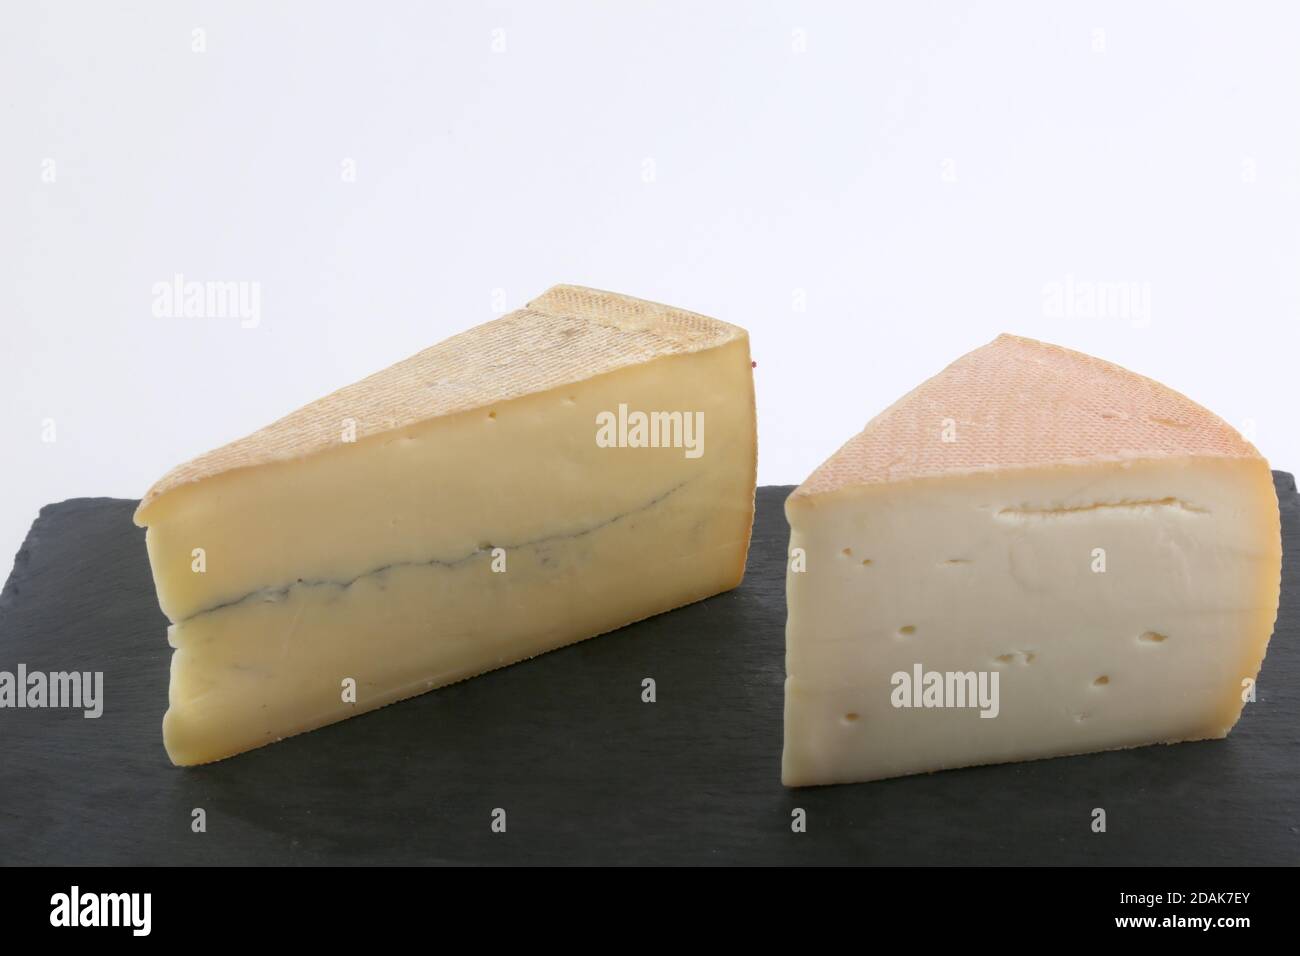 mucca francese e formaggio svizzero come morbier e gruyere Foto Stock